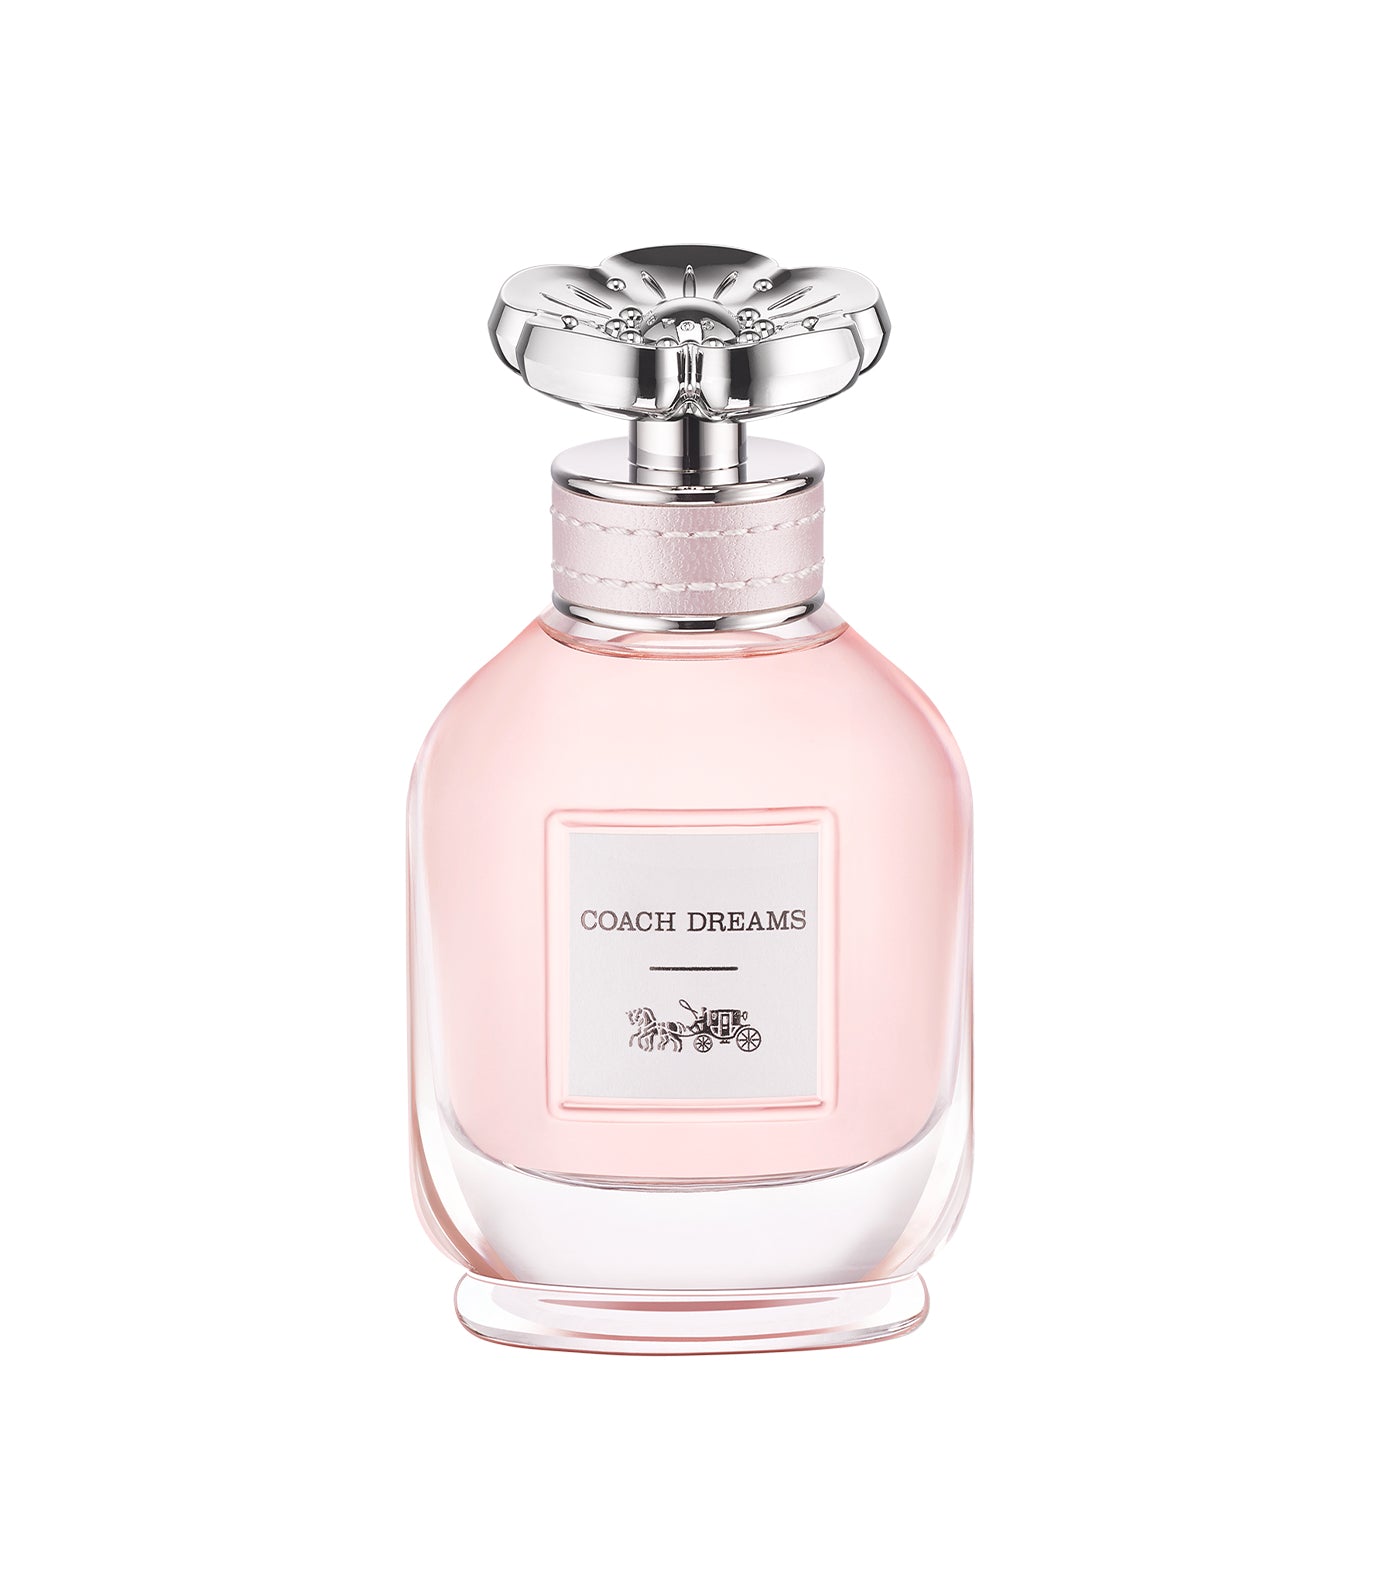 Dreams Eau de Parfum by Coach Fragrances 40ml